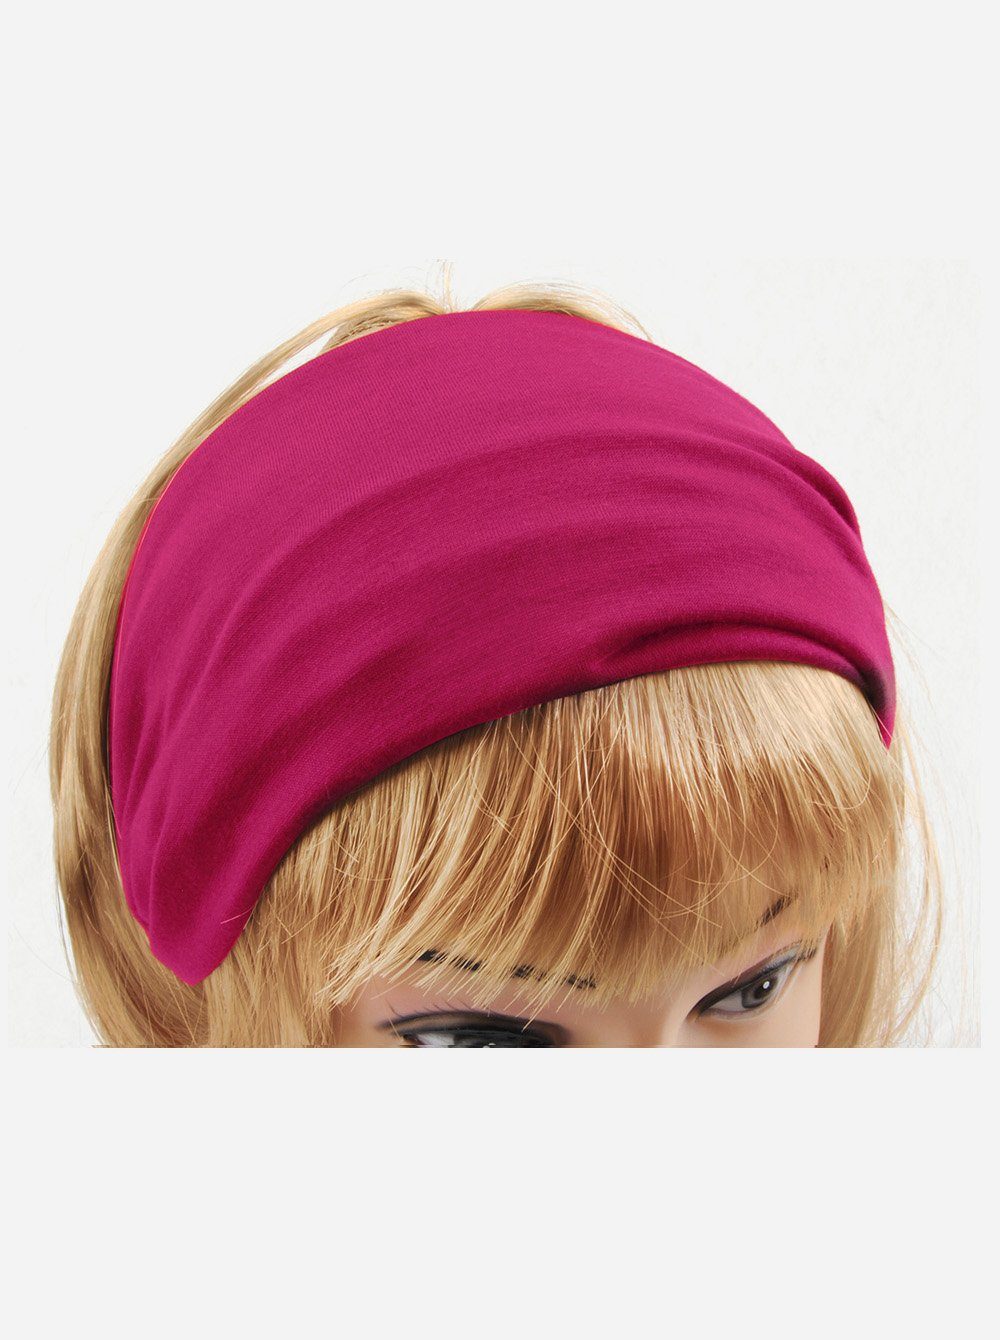 Sport Haarband Damen Haarband Rosa Stirnband Hairband axy und Yoga Kopfband, für